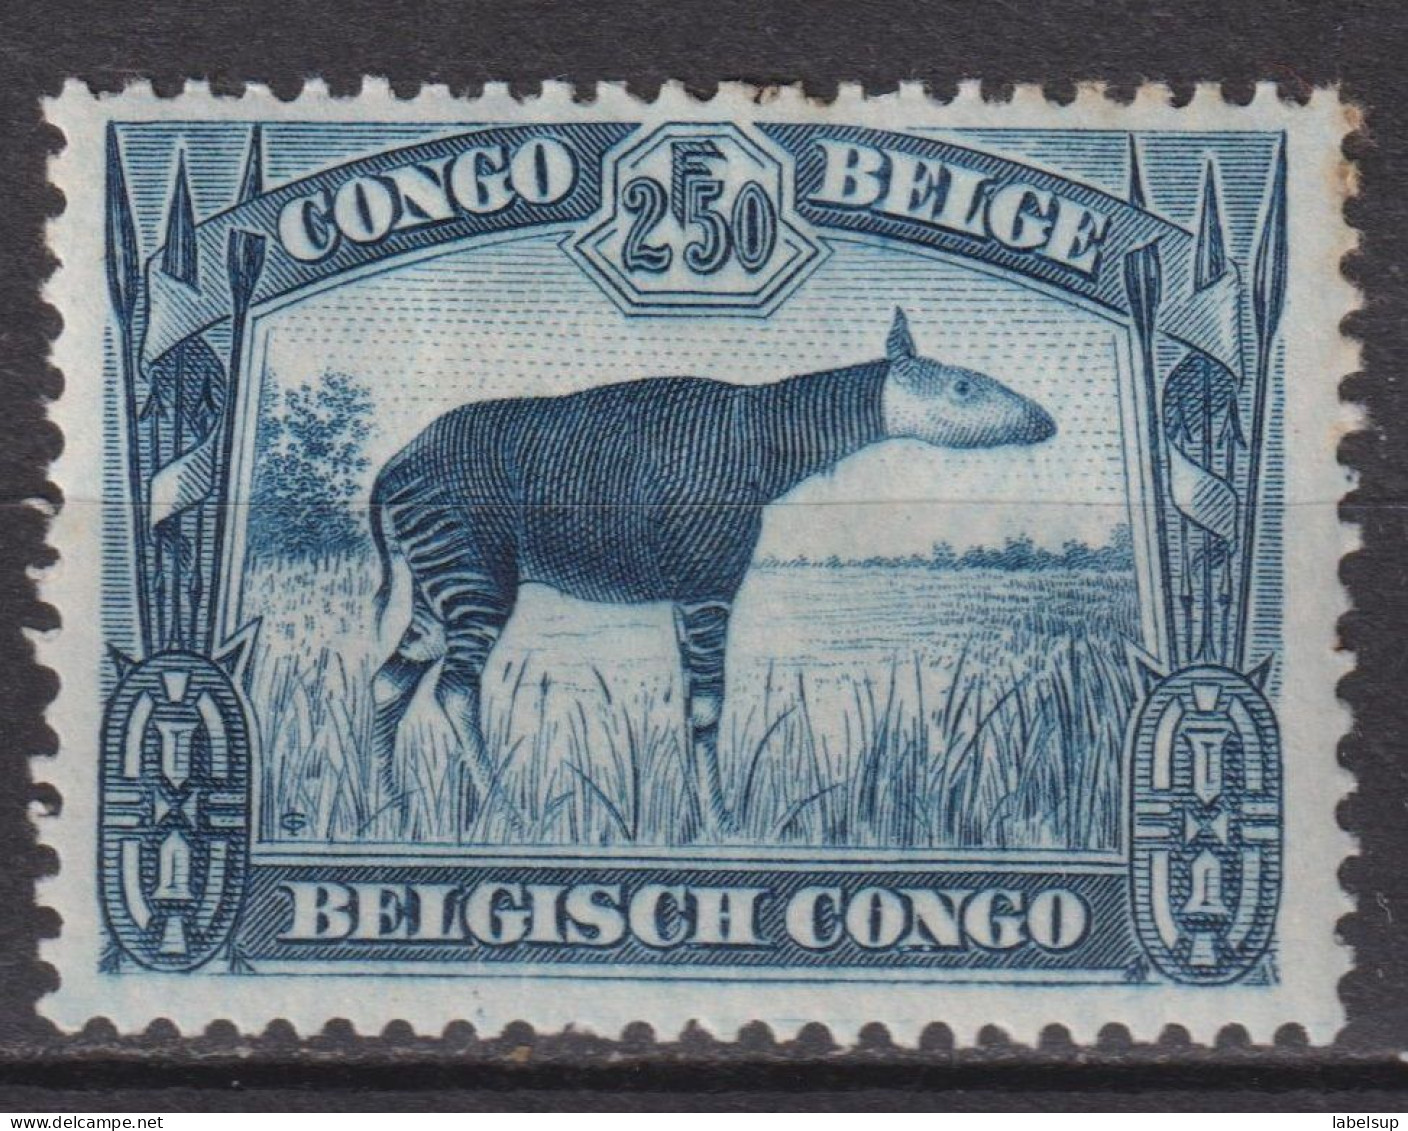 Timbre Neuf* Du Congo Belge De 1937 N°178A MH - Ongebruikt